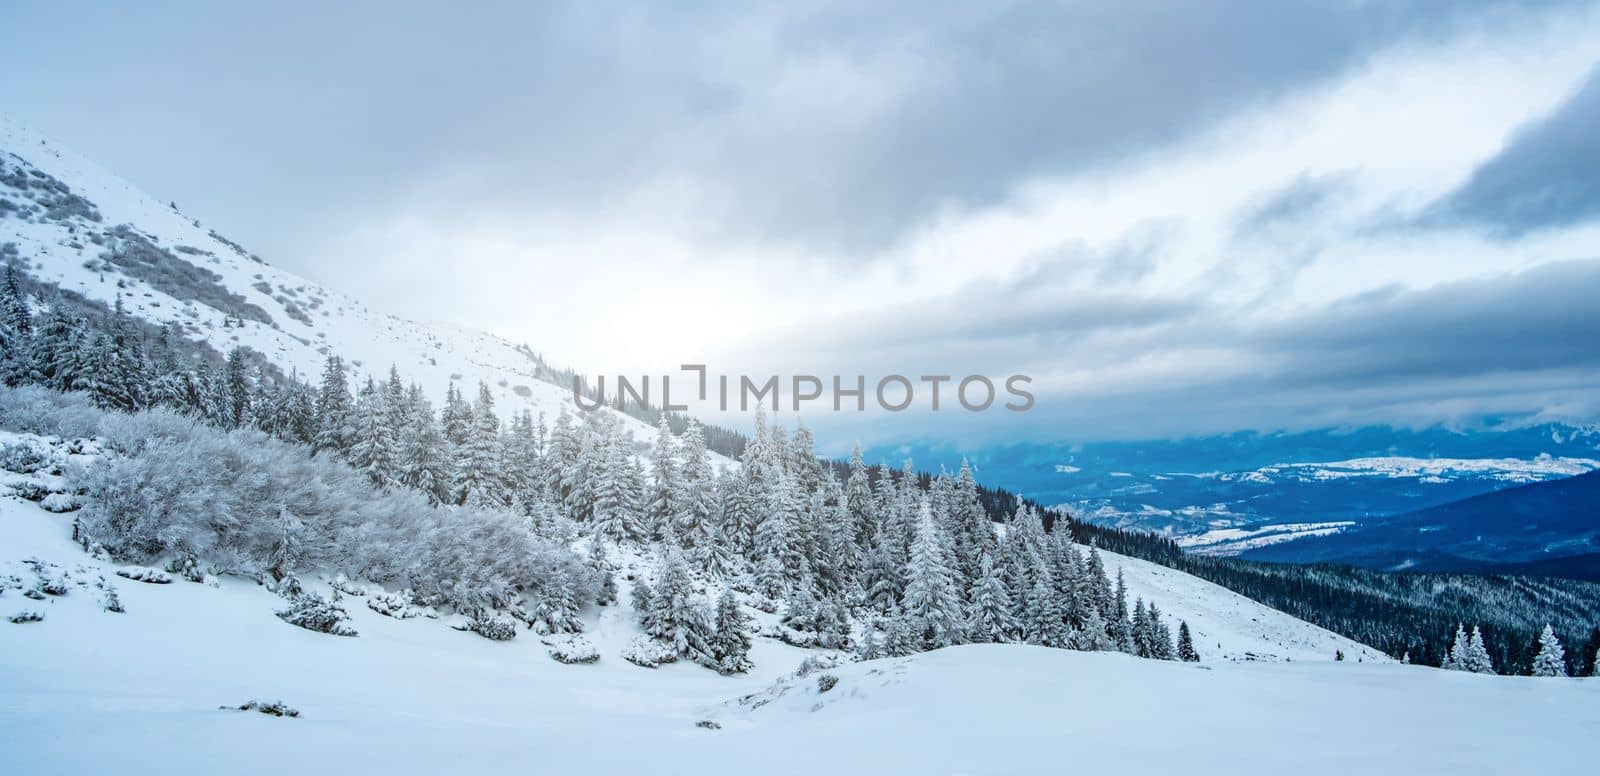 Scenic landscape of winter mountain range by GekaSkr